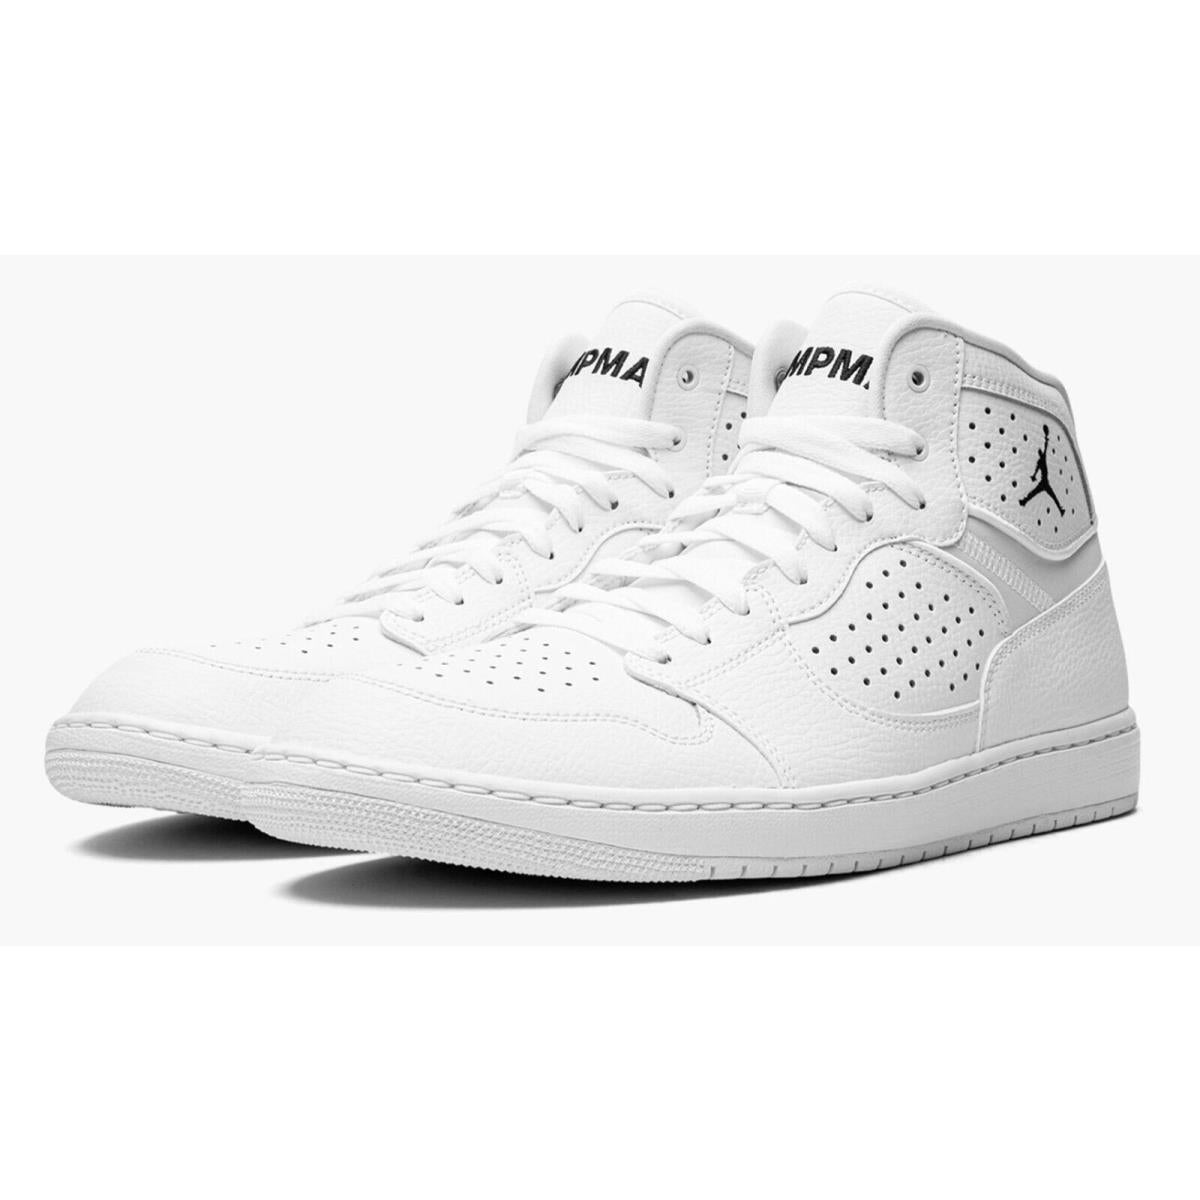 Nike Jordan Access Men's Hi Top Trainers Sneakers Basketball Shoes AR3762-100